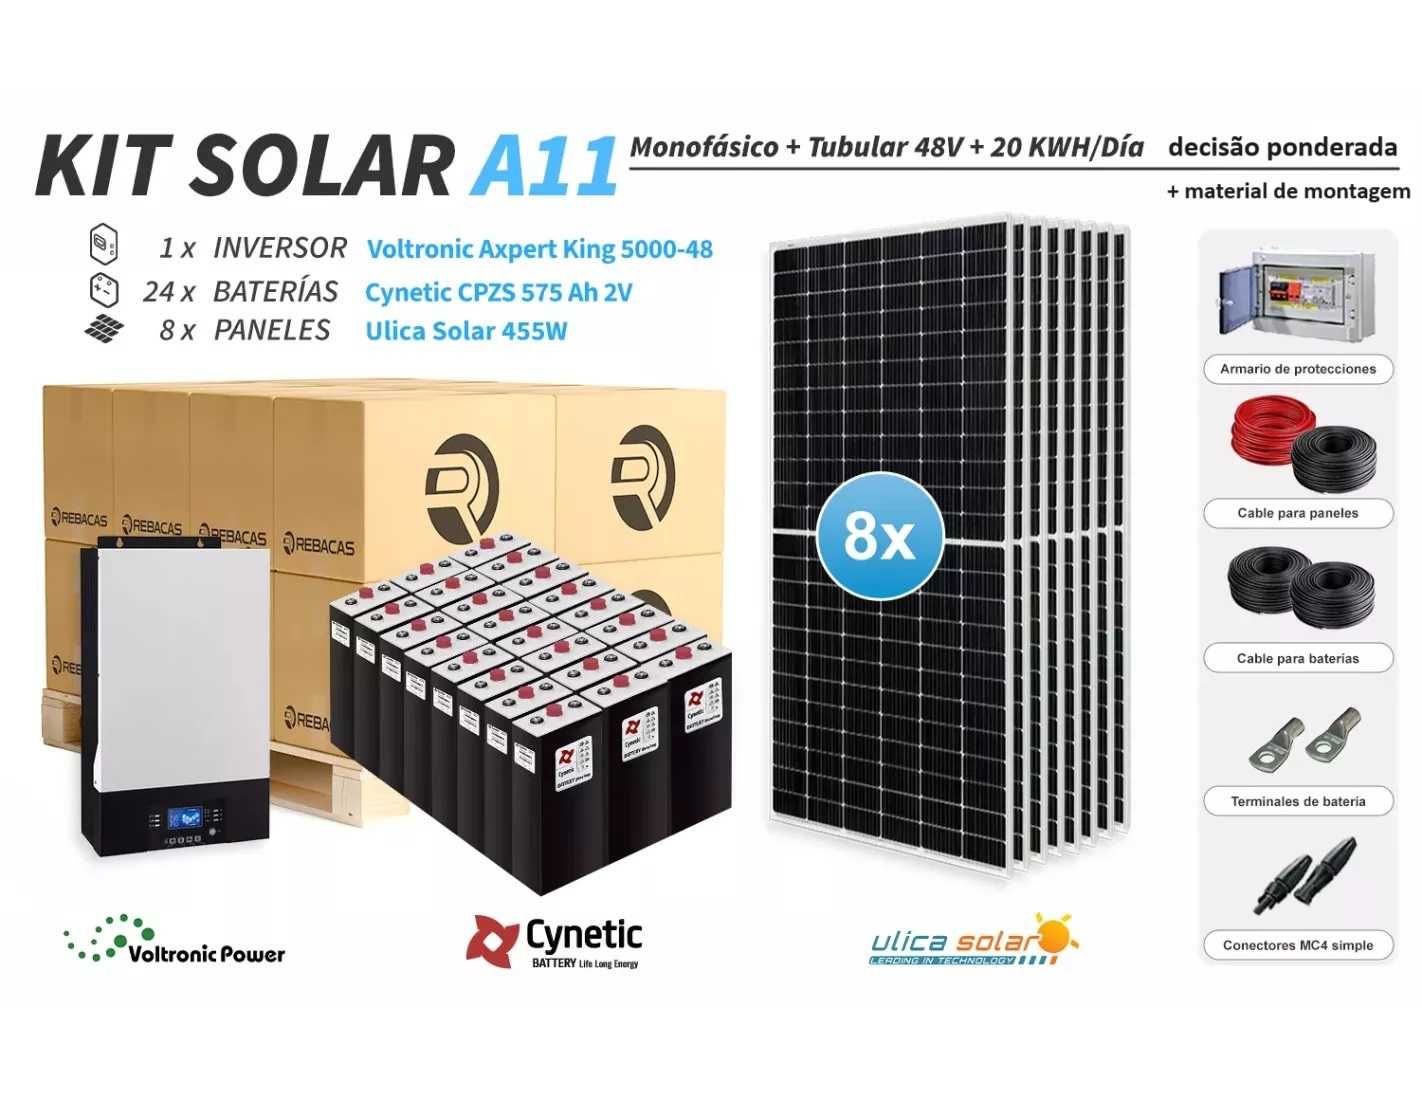 O kit solar isolado 11 produz até 20.000 Wh por dia